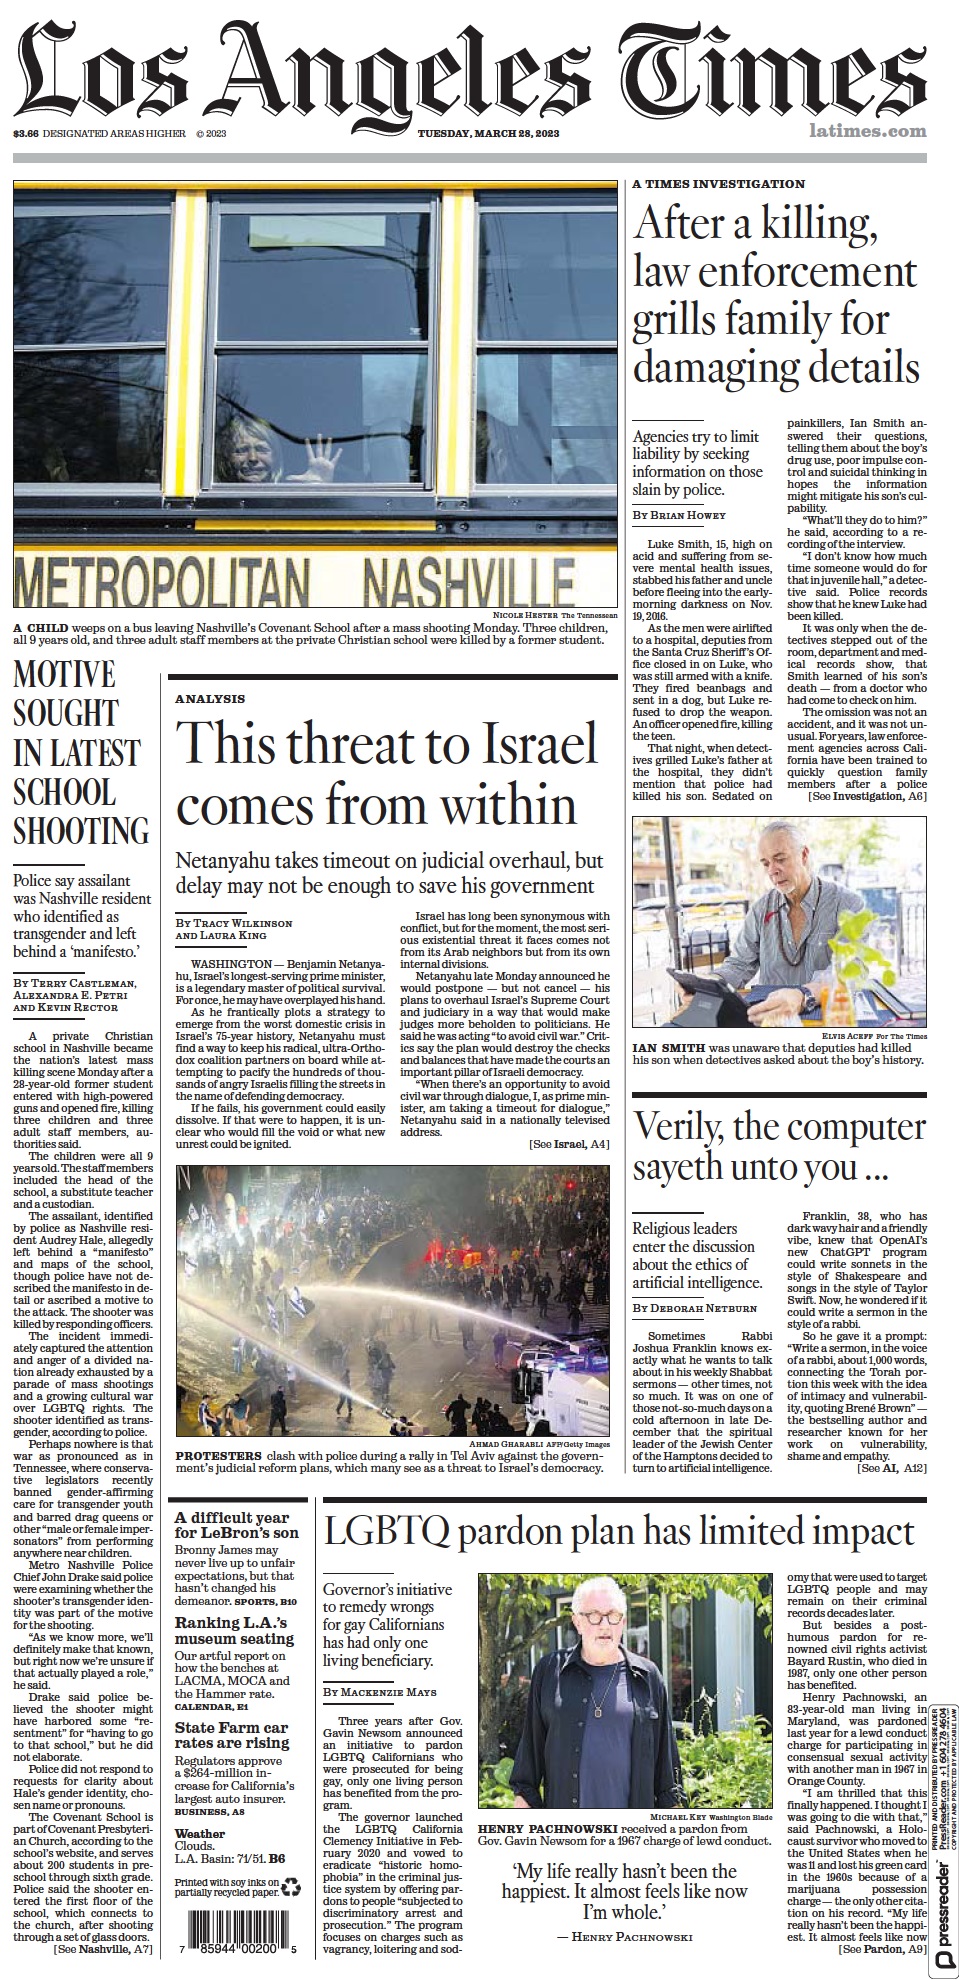 صفحه اول روزنامه لس آنجلس تایمز/ تهدید [نابودی] اسرائیل از داخل است